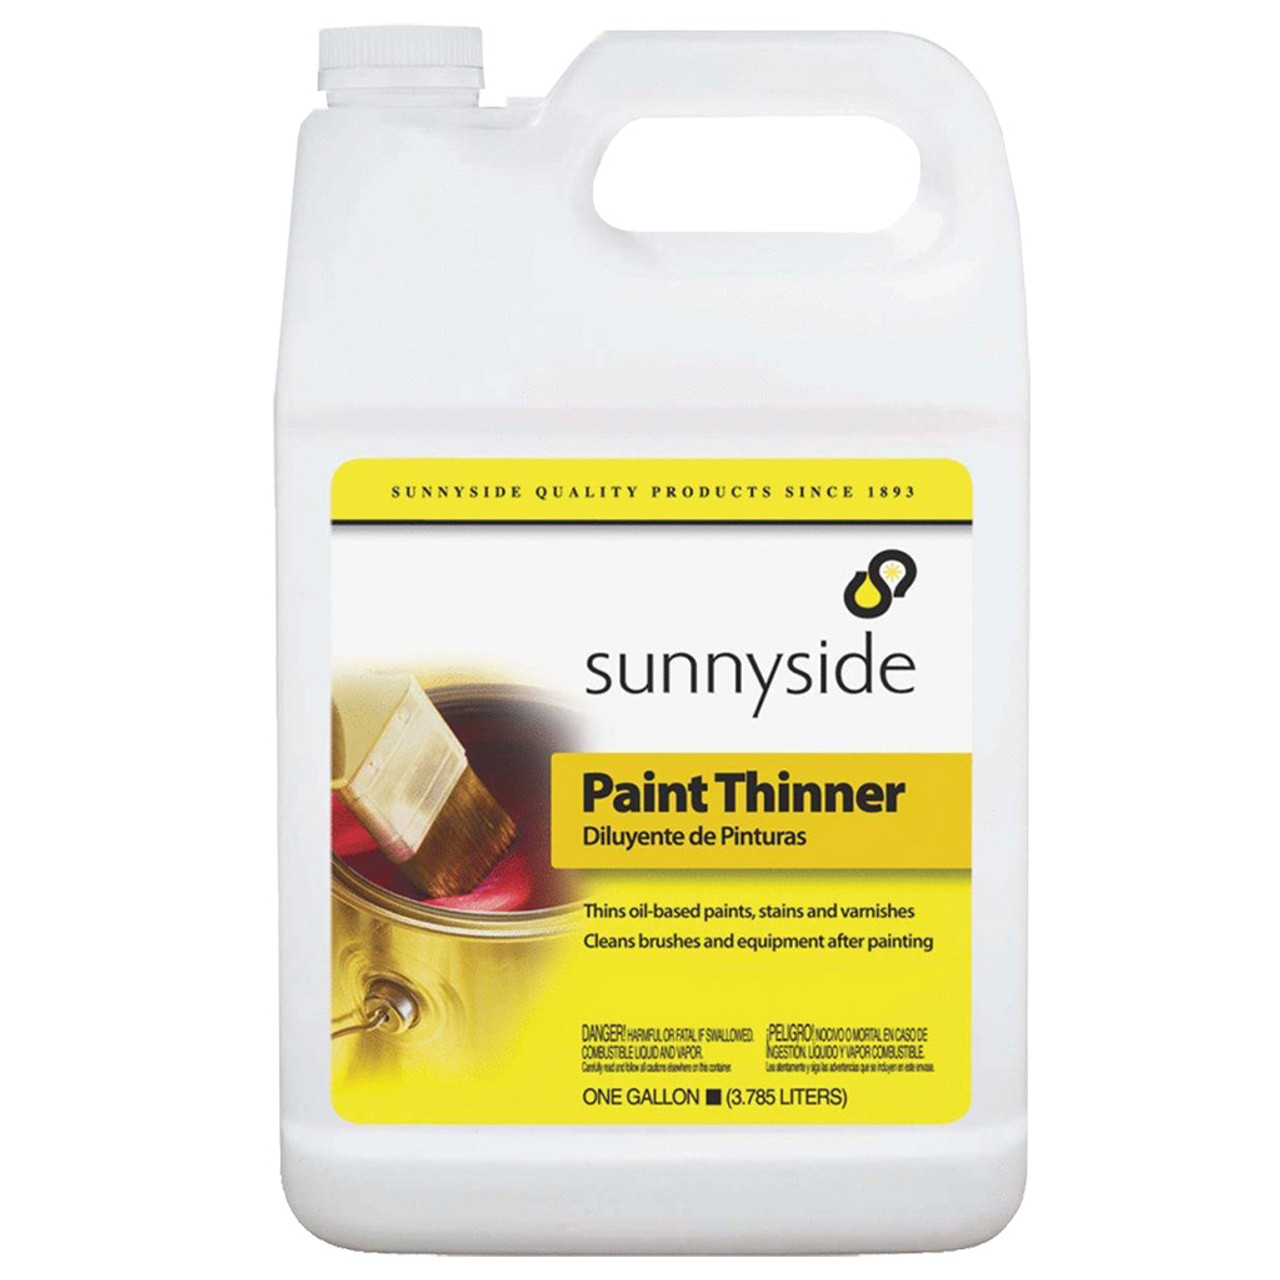 Sunnyside Paint Thinner